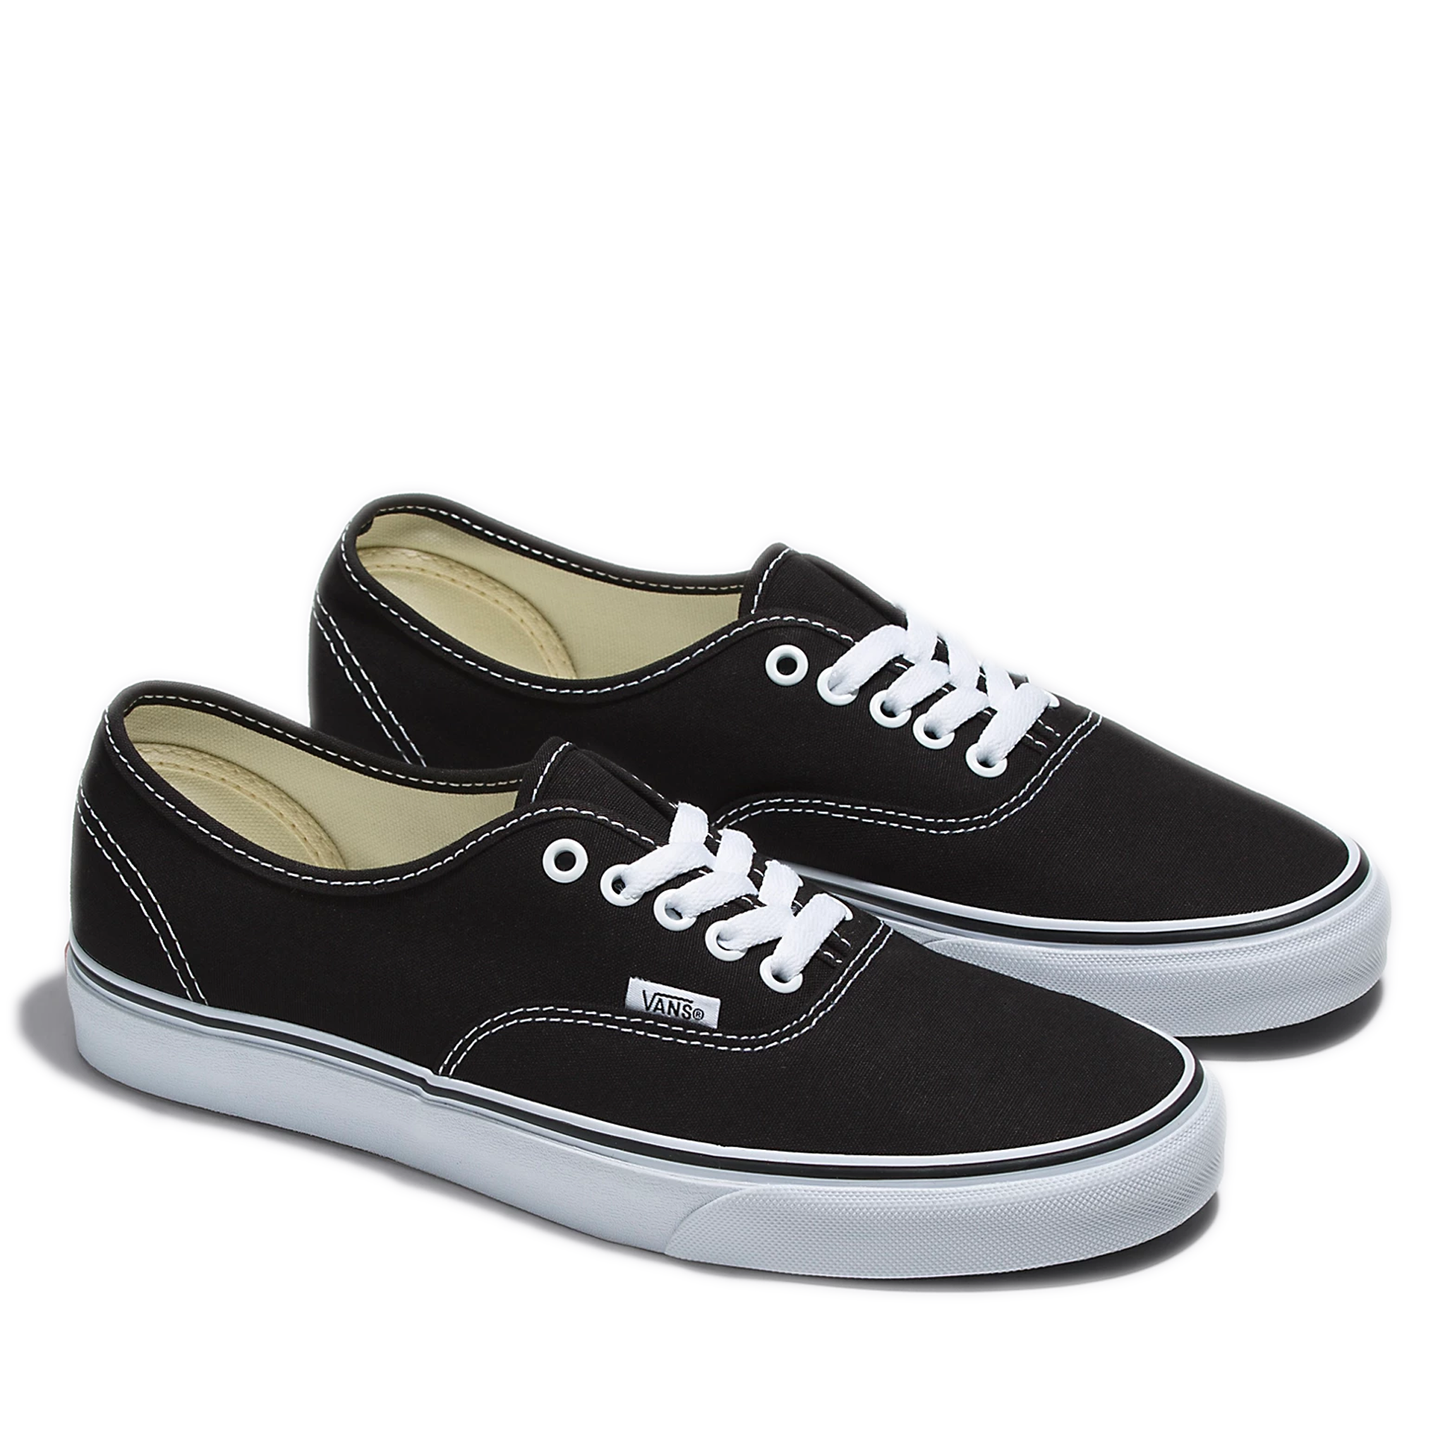 Men's Vans Authentic Shoes - Black/ White